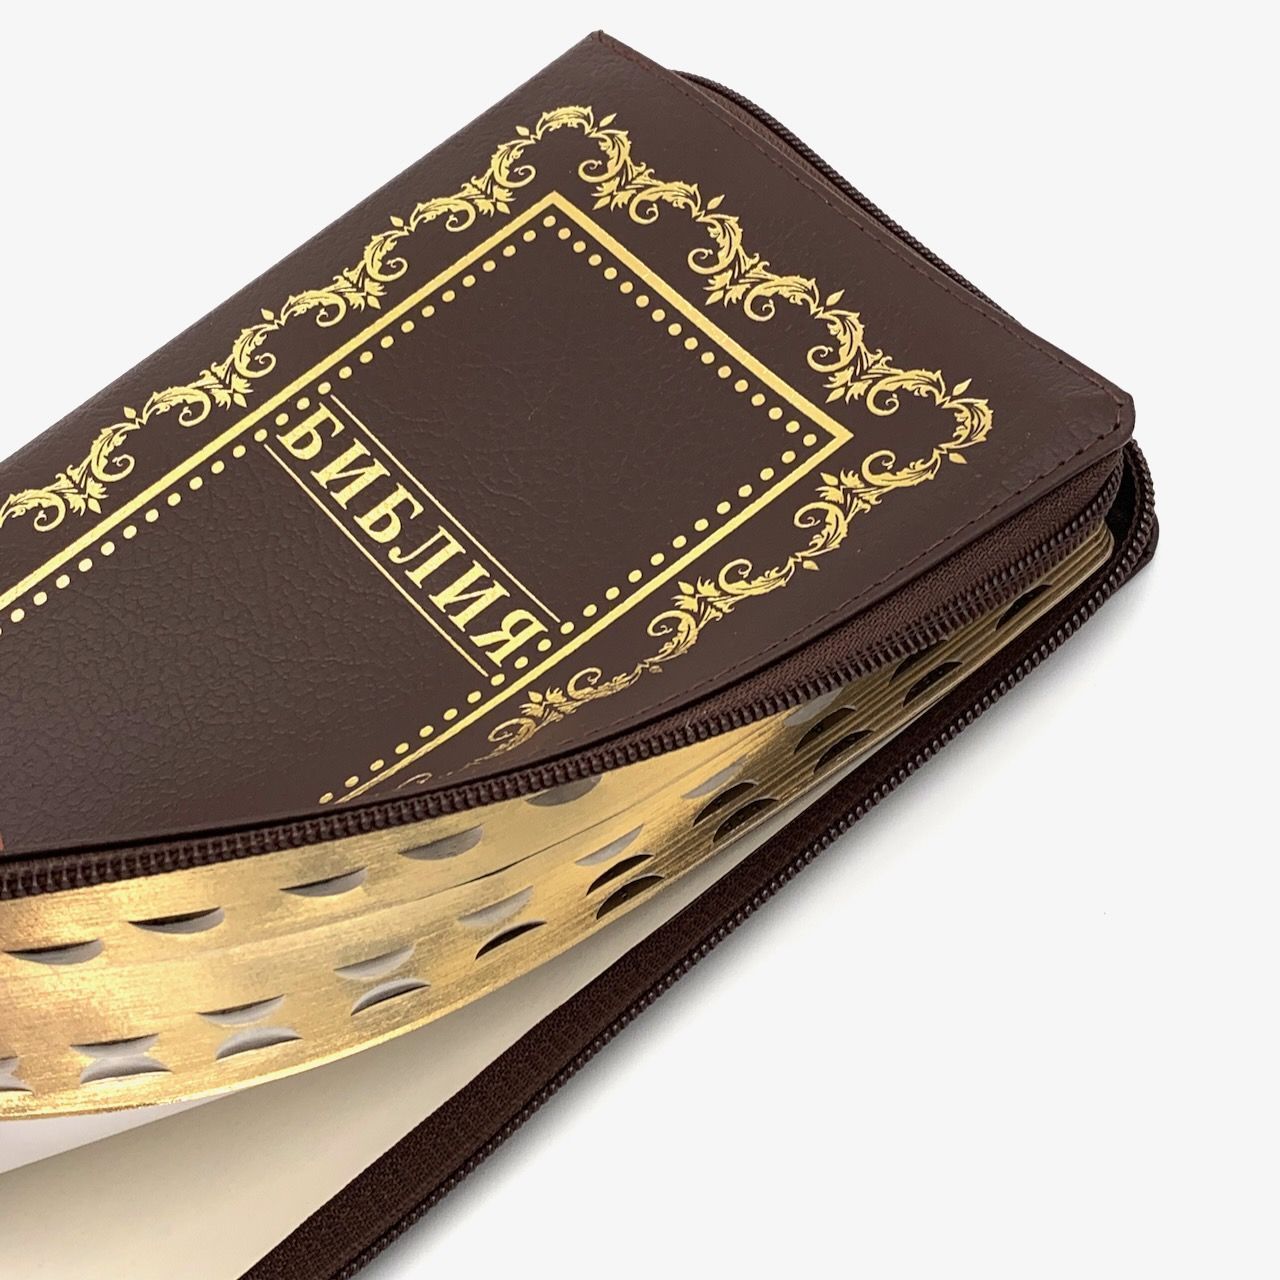 Библия 055zti код D5 дизайн "золотая рамка с орнаментом", кожаный переплет на молнии с индексами, цвет коричневый пятнистый, средний формат, 143*220 мм, параллельные места по центру страницы, белые страницы, золотой обрез